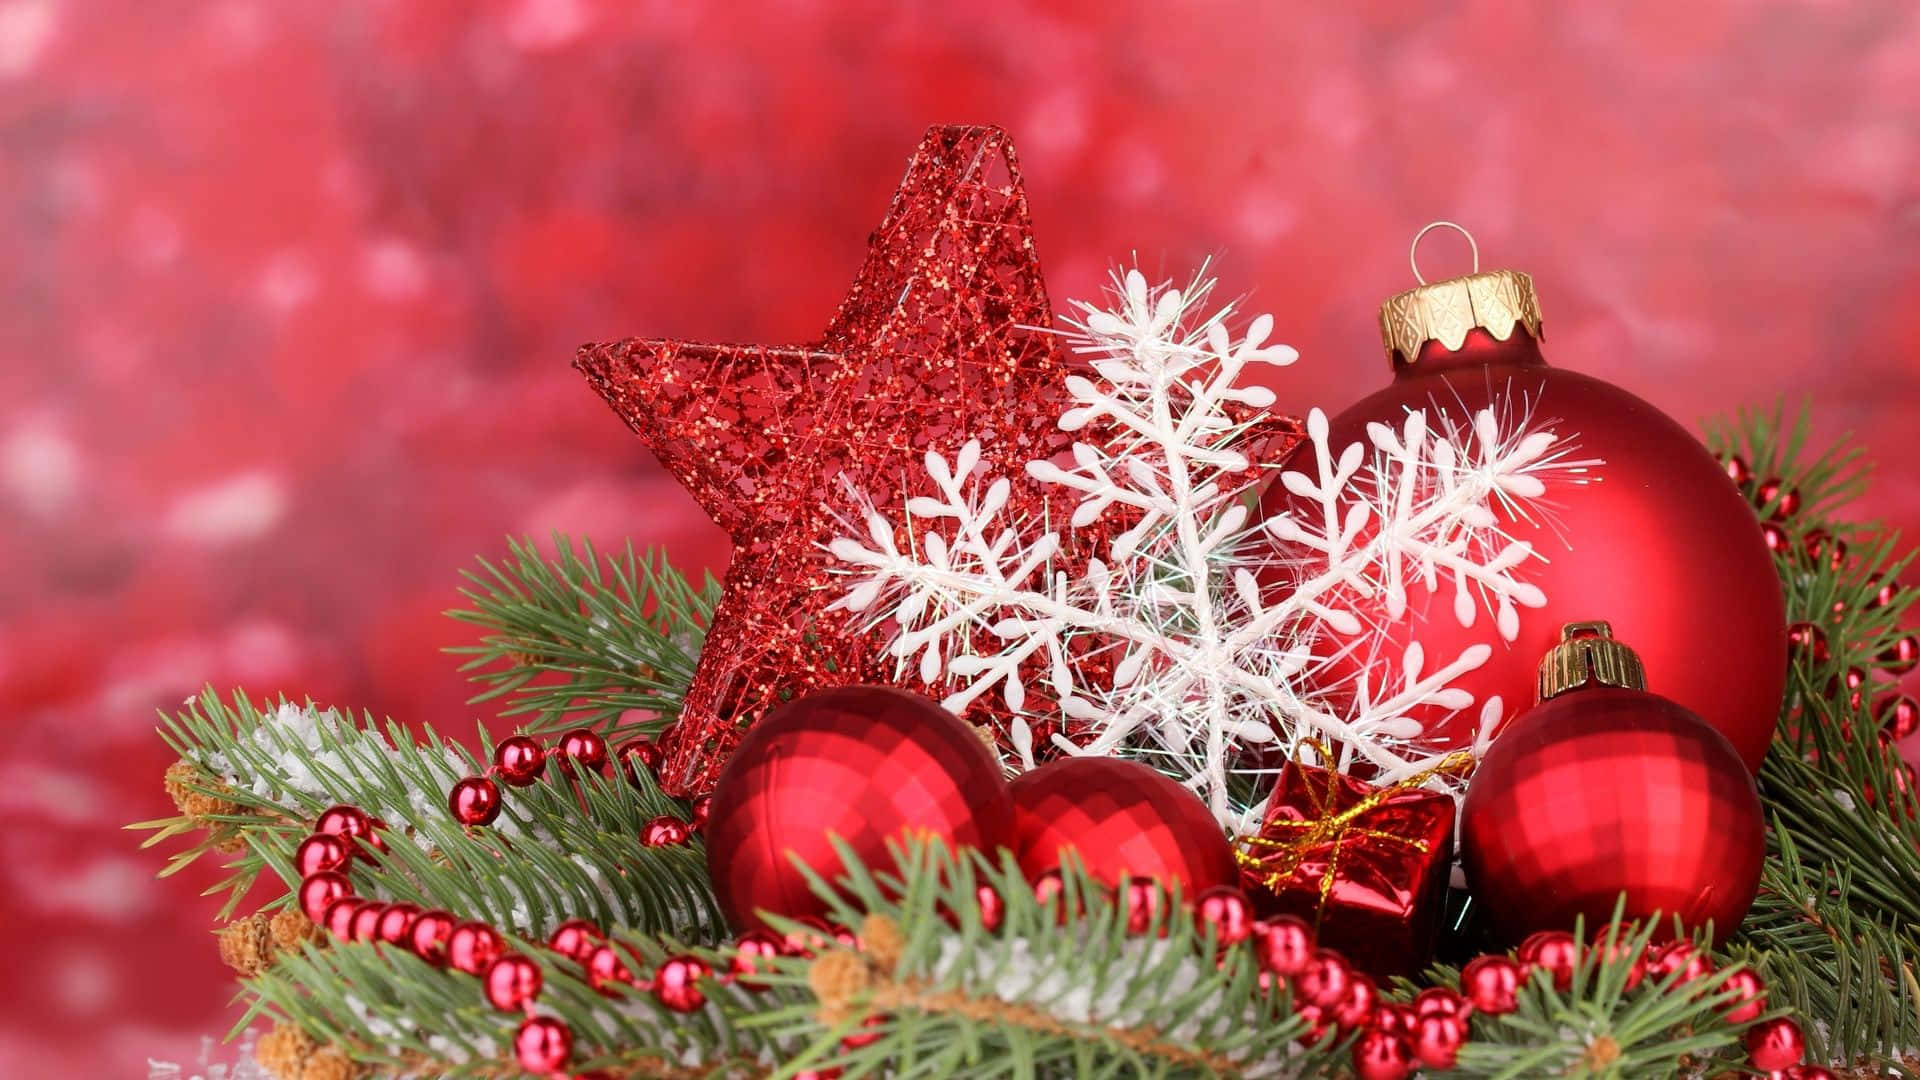 Farverige julepynt | Beskrivelse: Assorteret af festlige julepynt i forskellige farver og størrelser | Relaterede søgeord: Juledekorationer, Xmas, kugler, dekoration, ferie, træ, snefnug, juleklokker, tinsel, stjerne Wallpaper